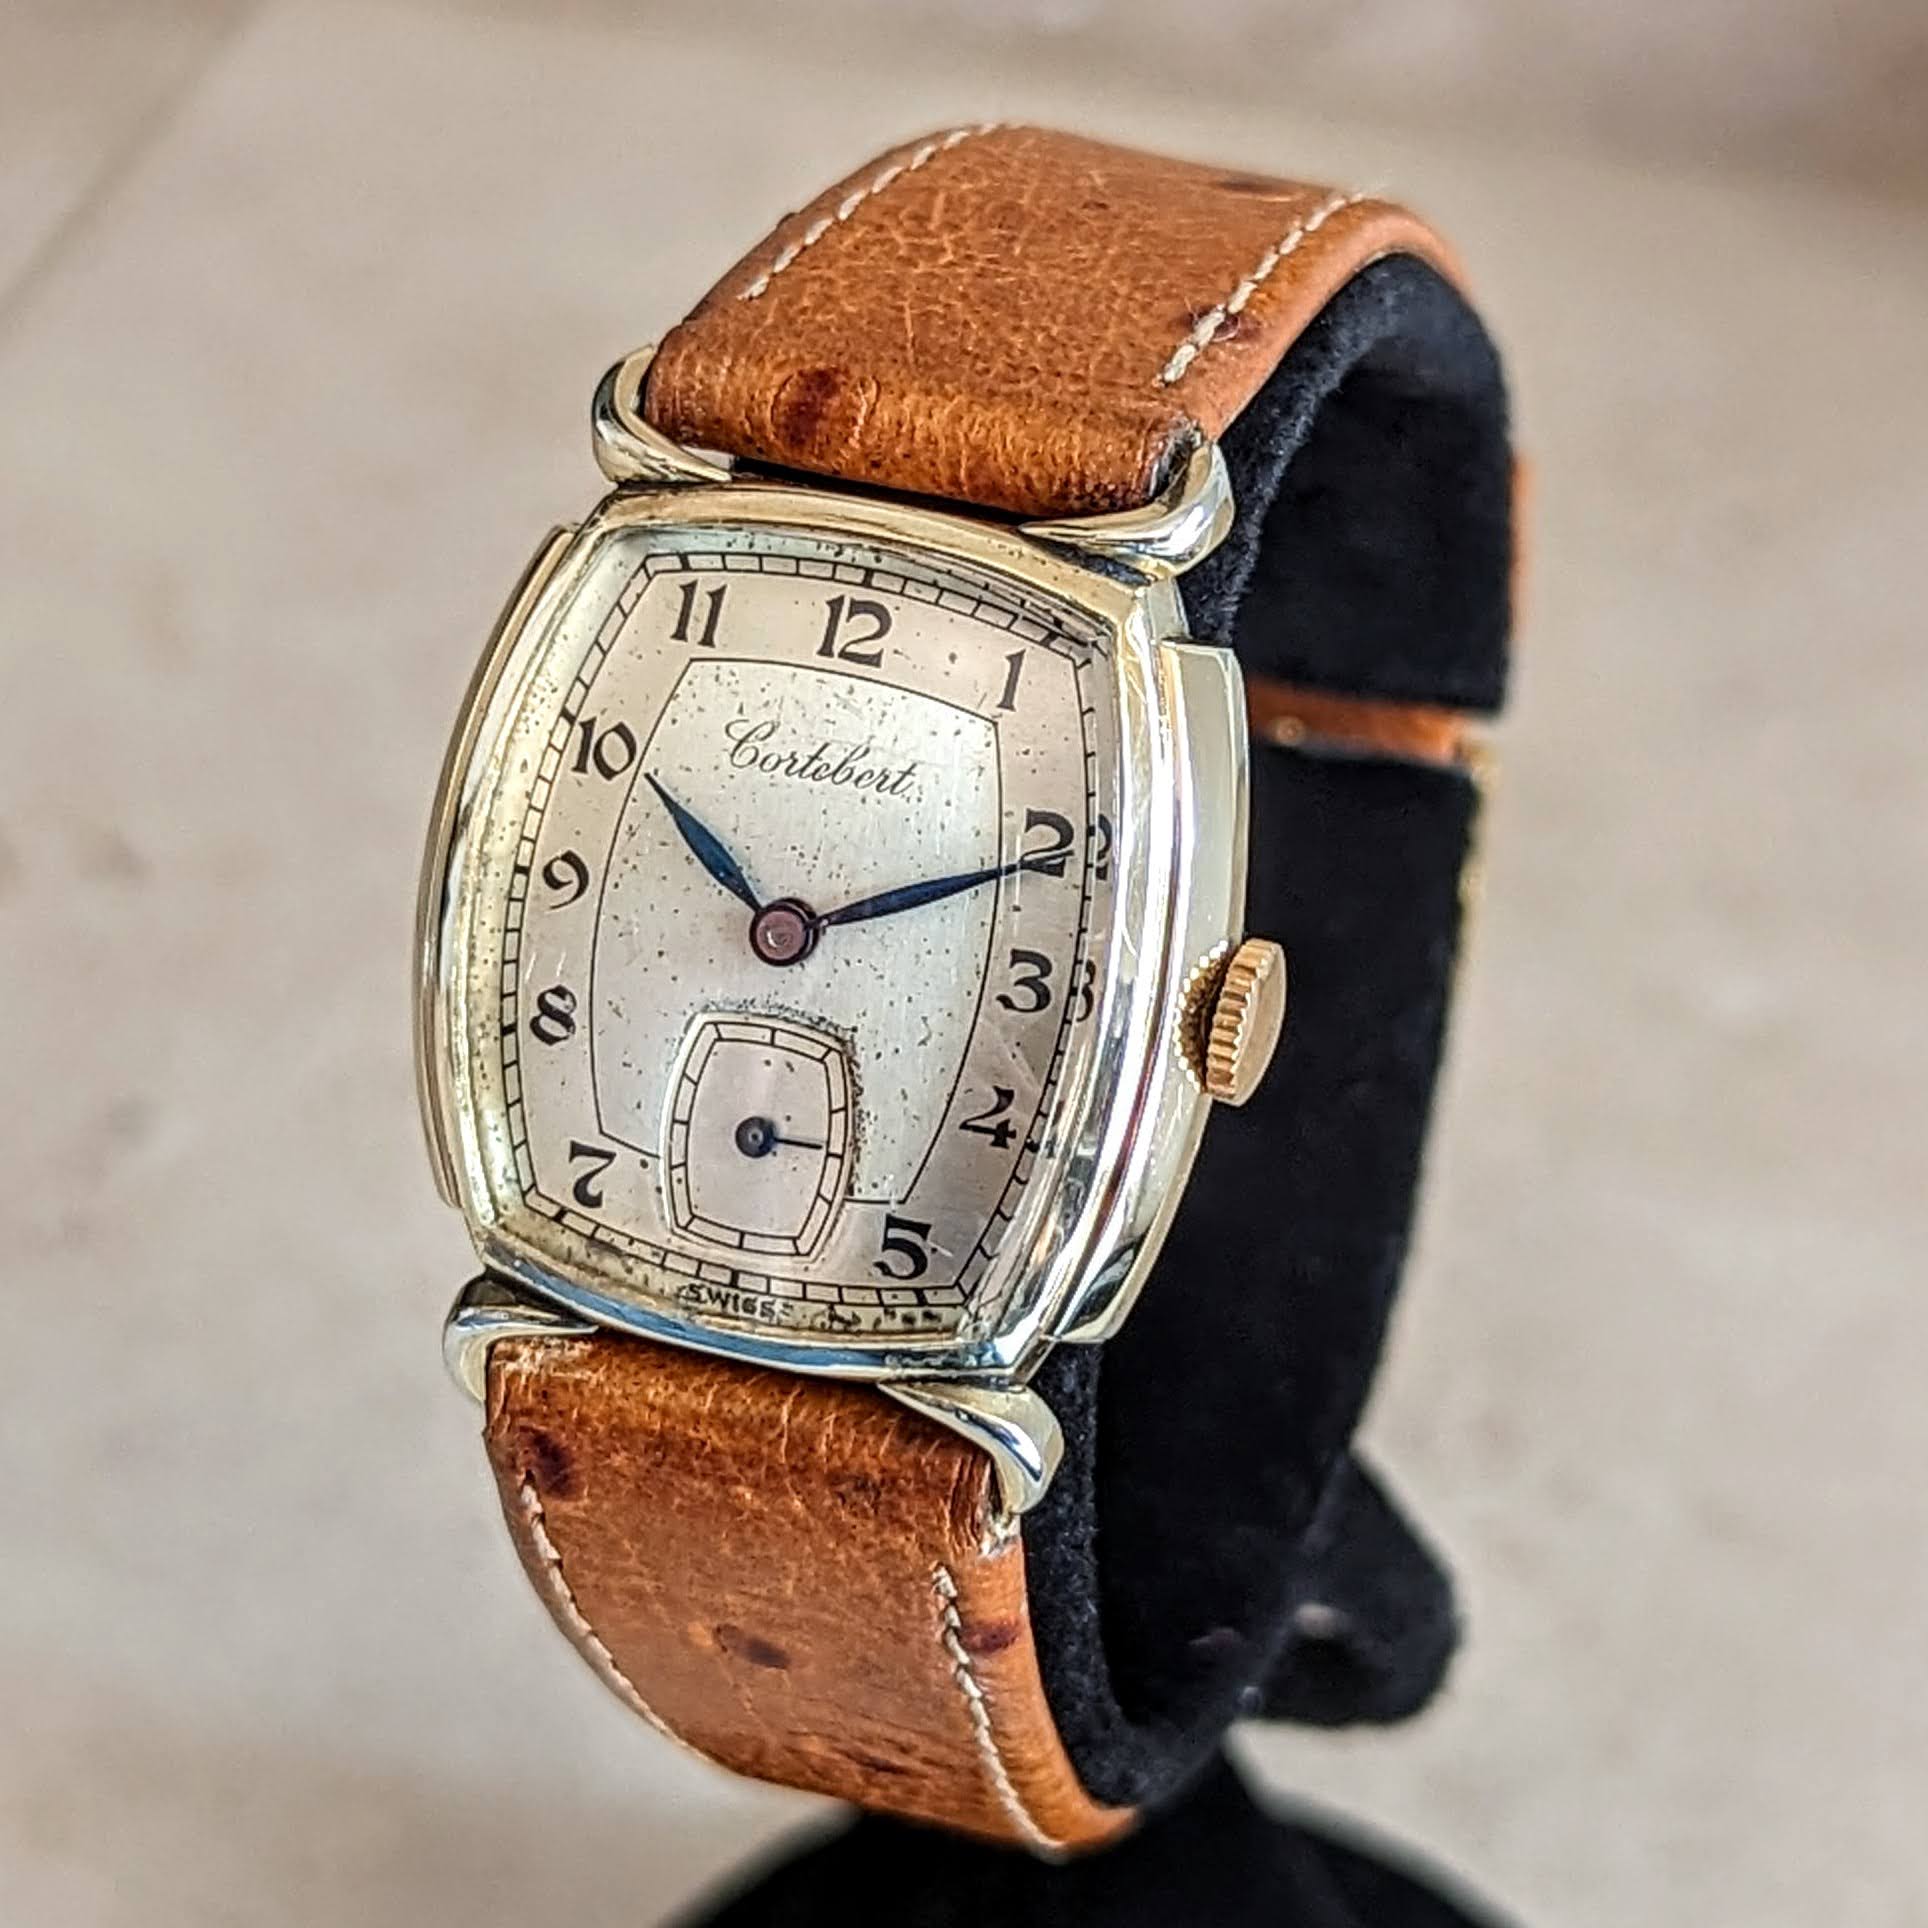 CORTEBERT Wristwatch 17 Jewels Cal. 665 Swiss Made Mechanical Watch